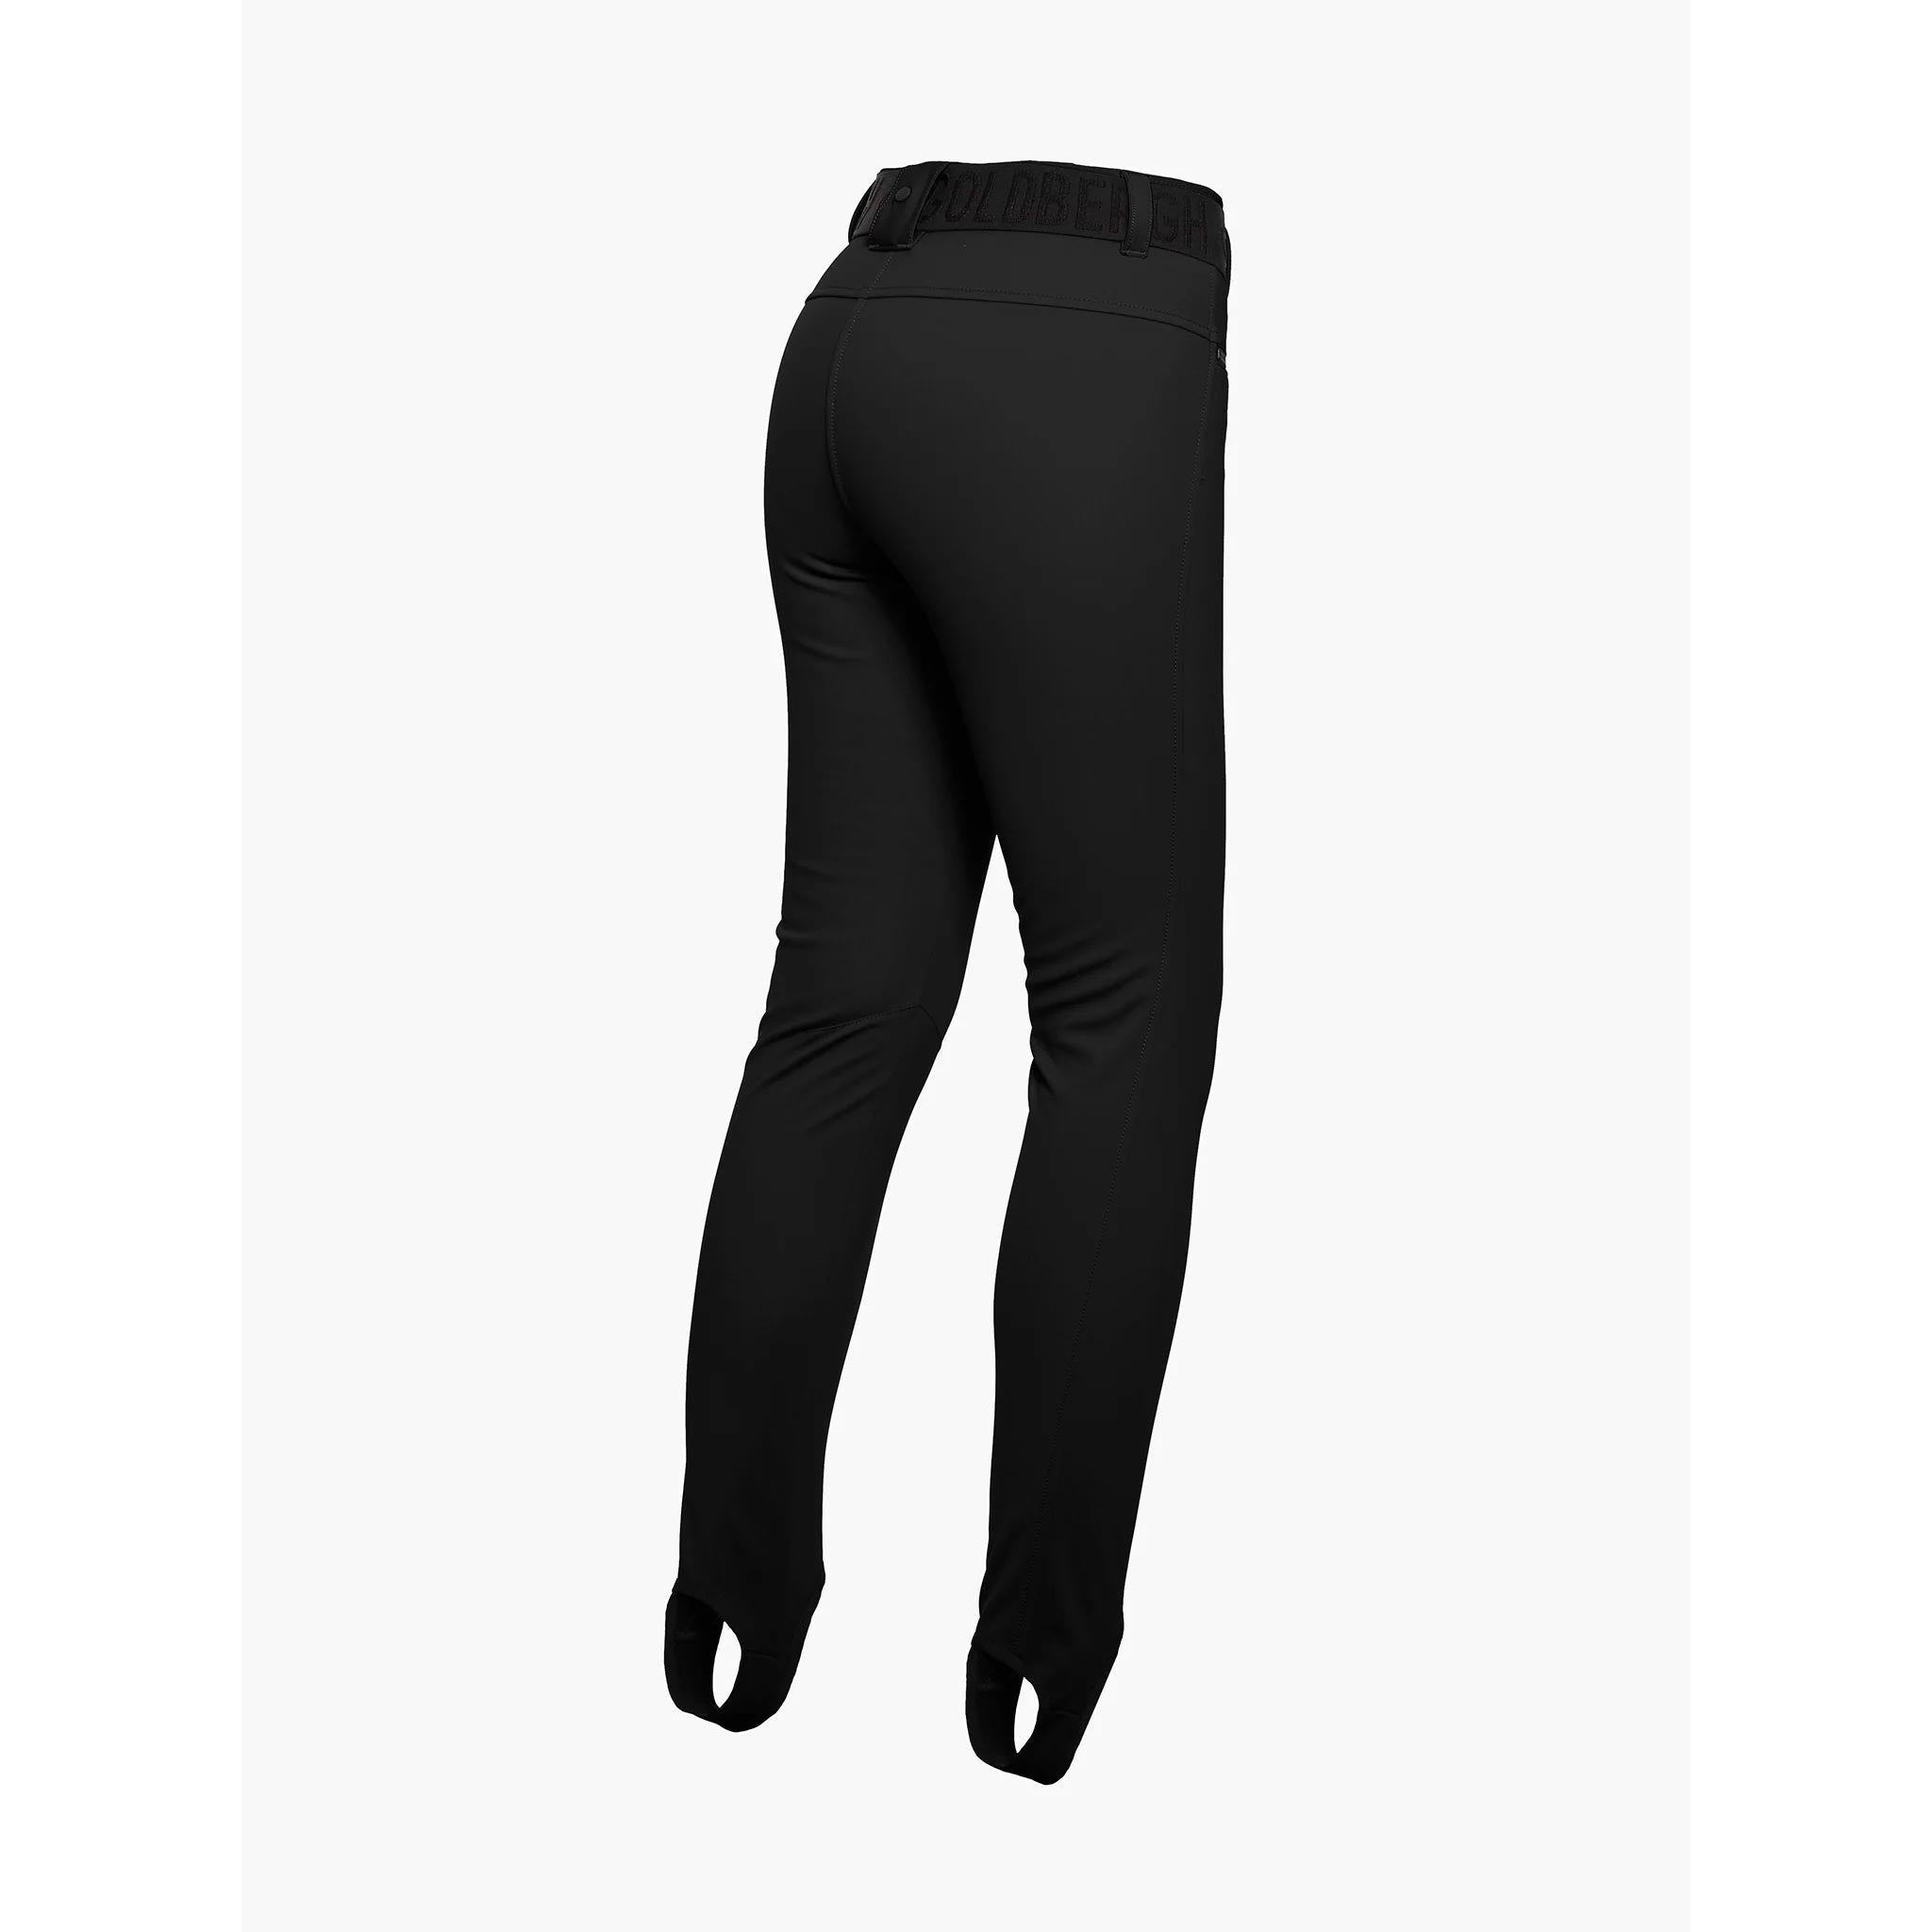 Paris Ski Pants in Black